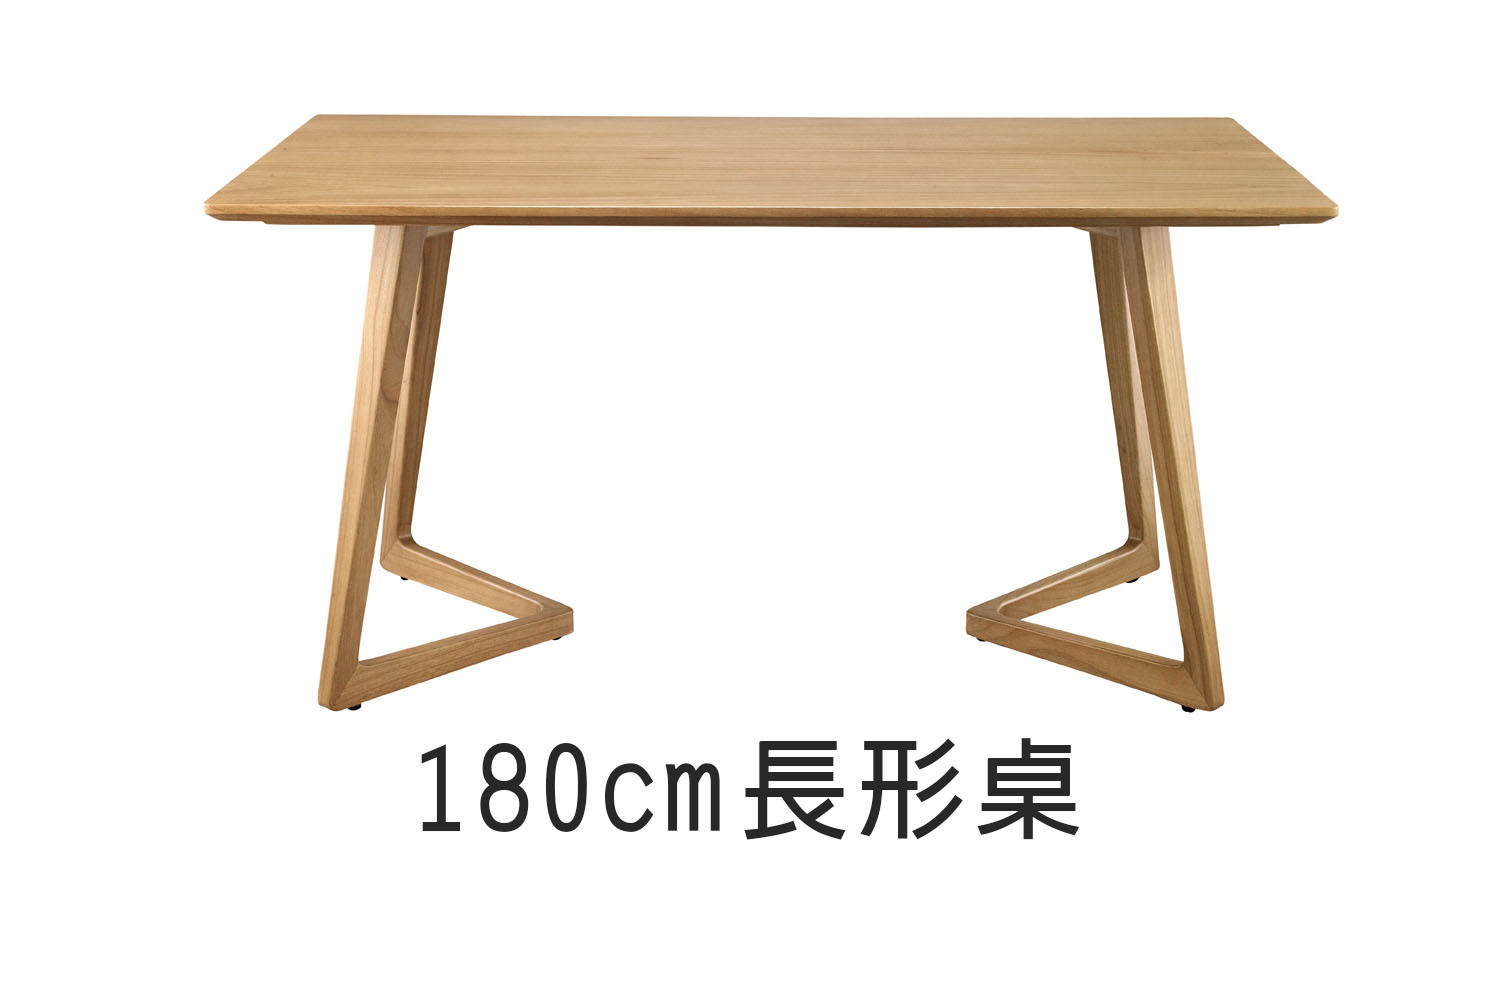 北歐風長形實木餐桌-180cm WRTA09R1